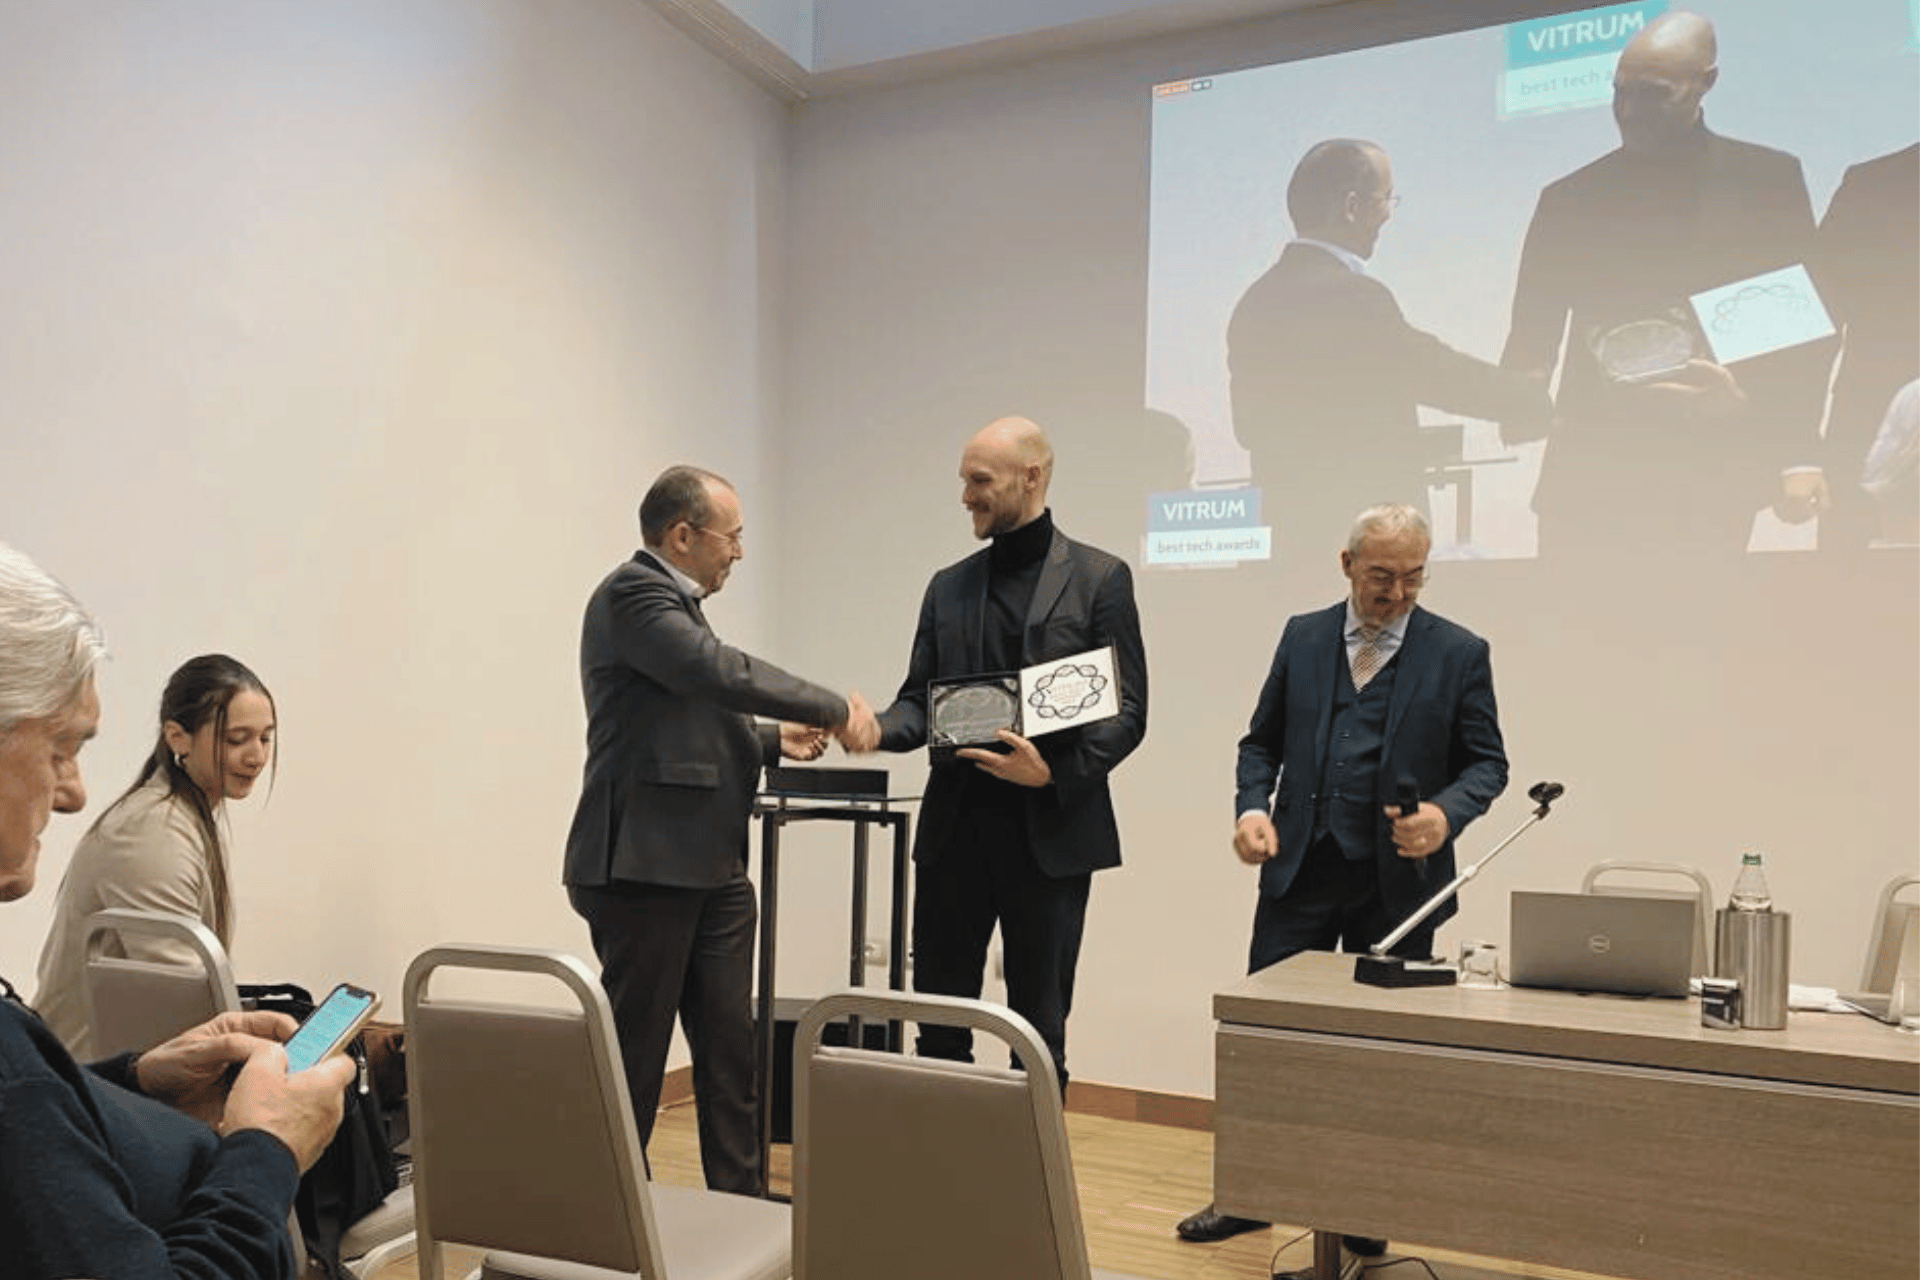 Prize awarded to Jonas Pfannenstill